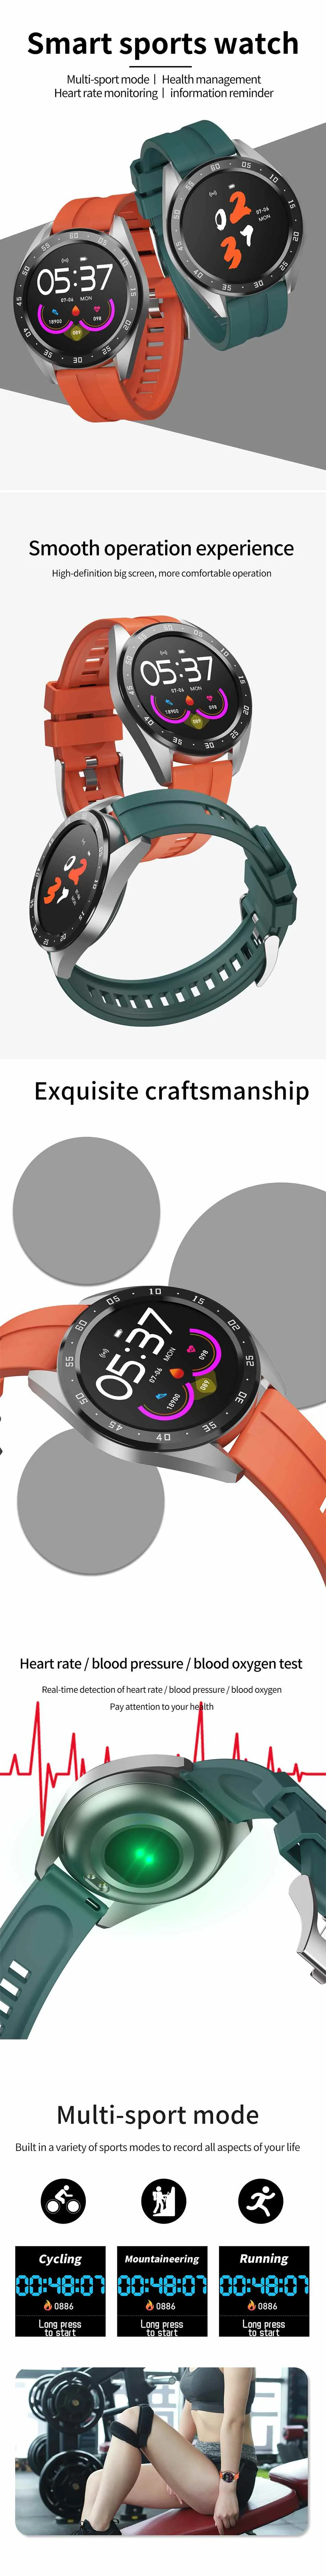 Bakeey X10 мода погода толчок в реальном времени вызов Rmind сердечного ритма крови кислородный монитор bluetooth OTA Смарт часы для Android IOS